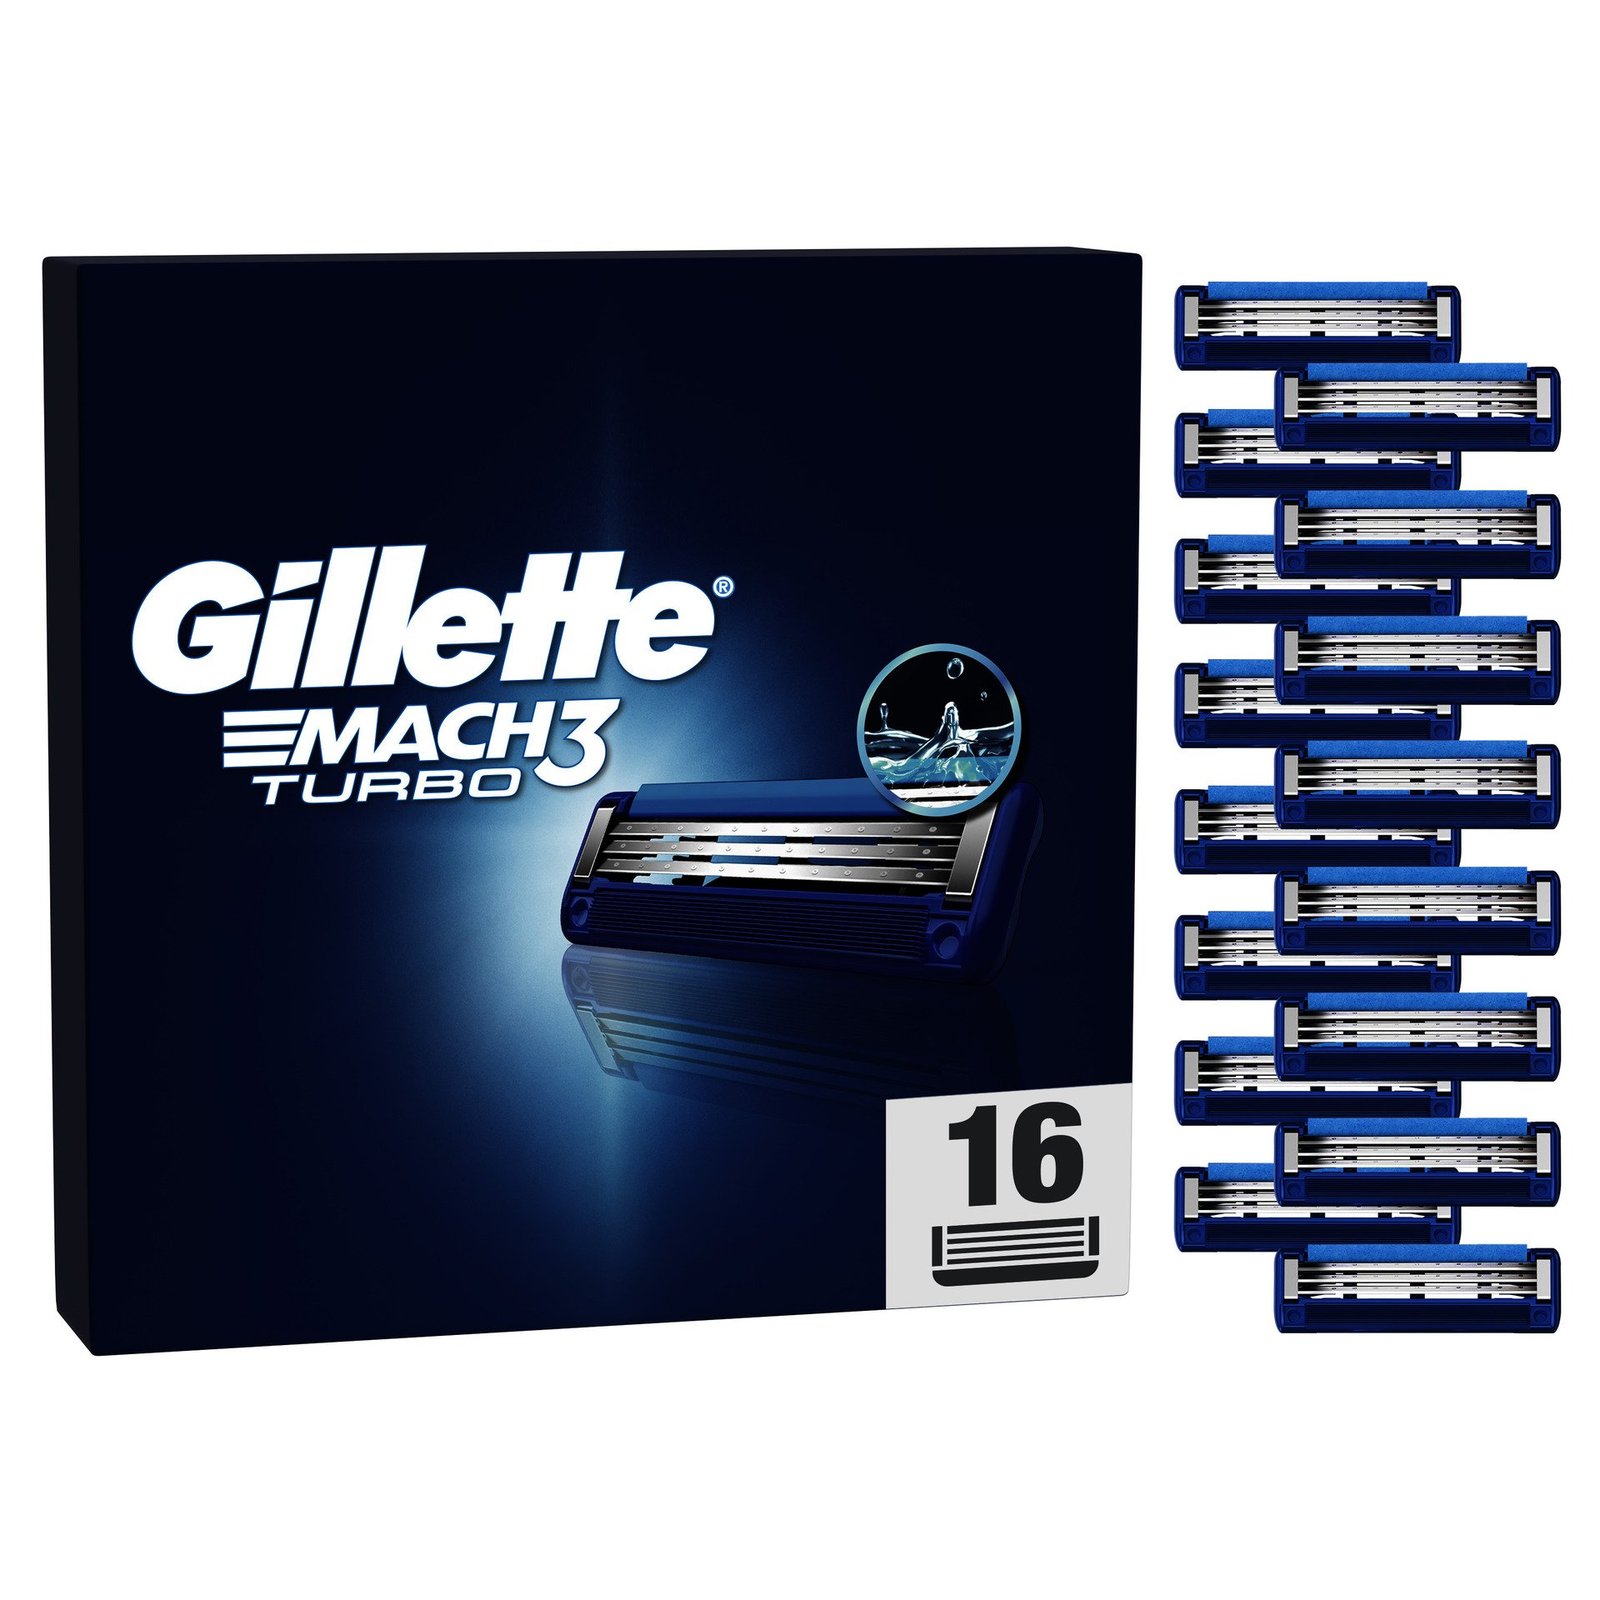 Gillette Mach3 Turbo rakblad för män, 16 st